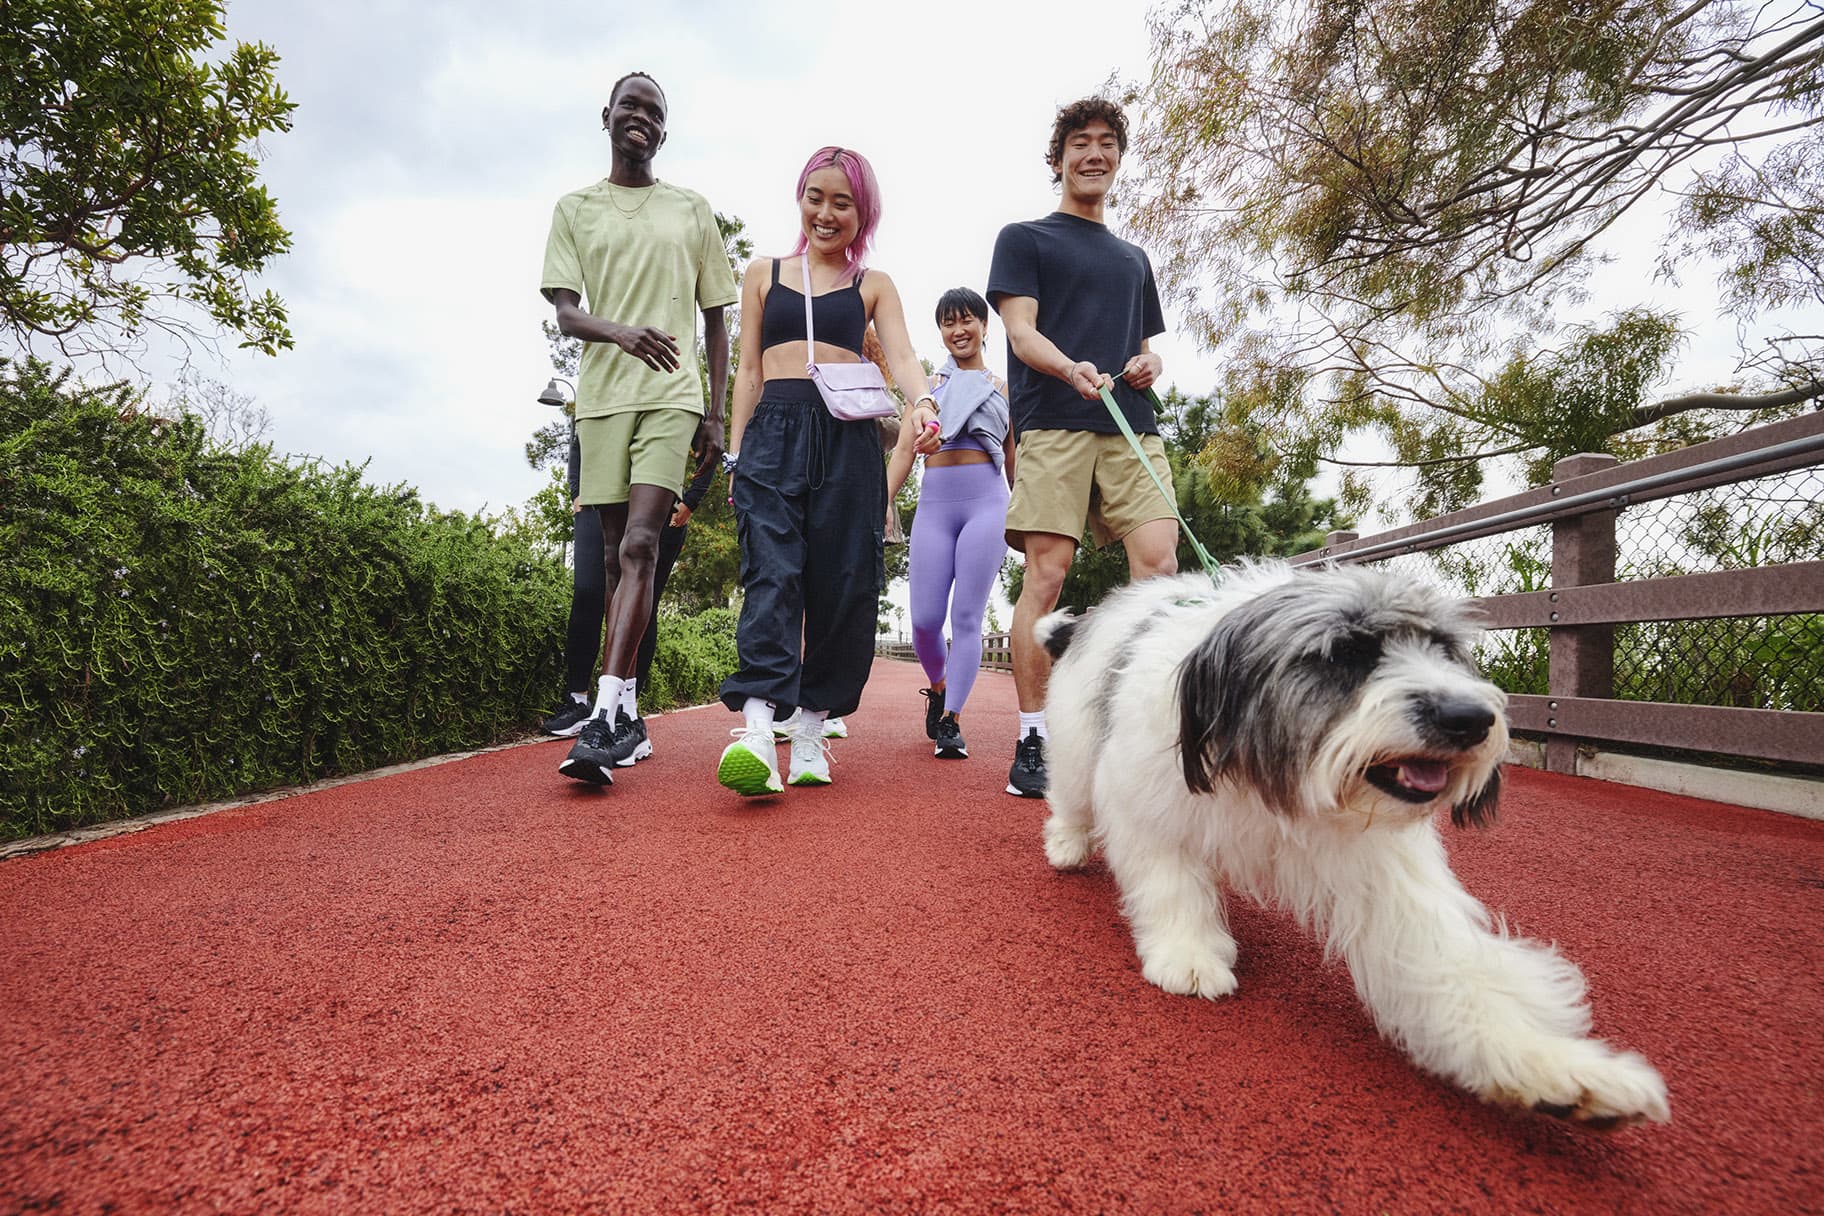 I cinque incredibili benefici di camminare tutti i giorni, secondo le esperte